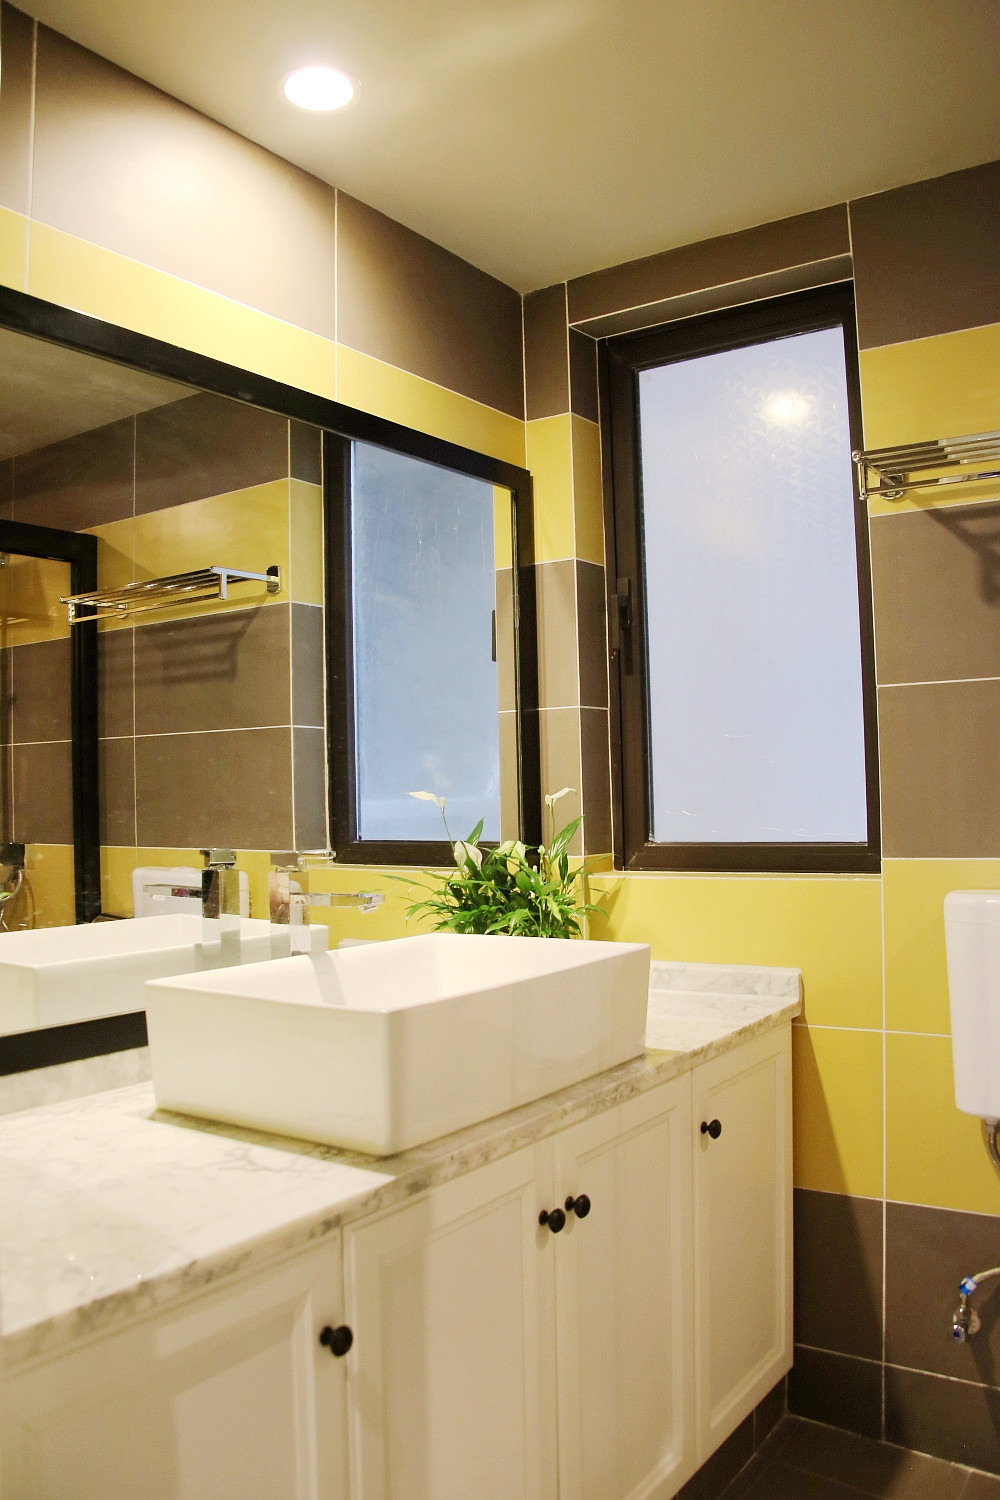 二居室装修,100平米装修,5-10万装修,卫生间,洗手台,浴室柜,瓷砖,混搭风格,黄色